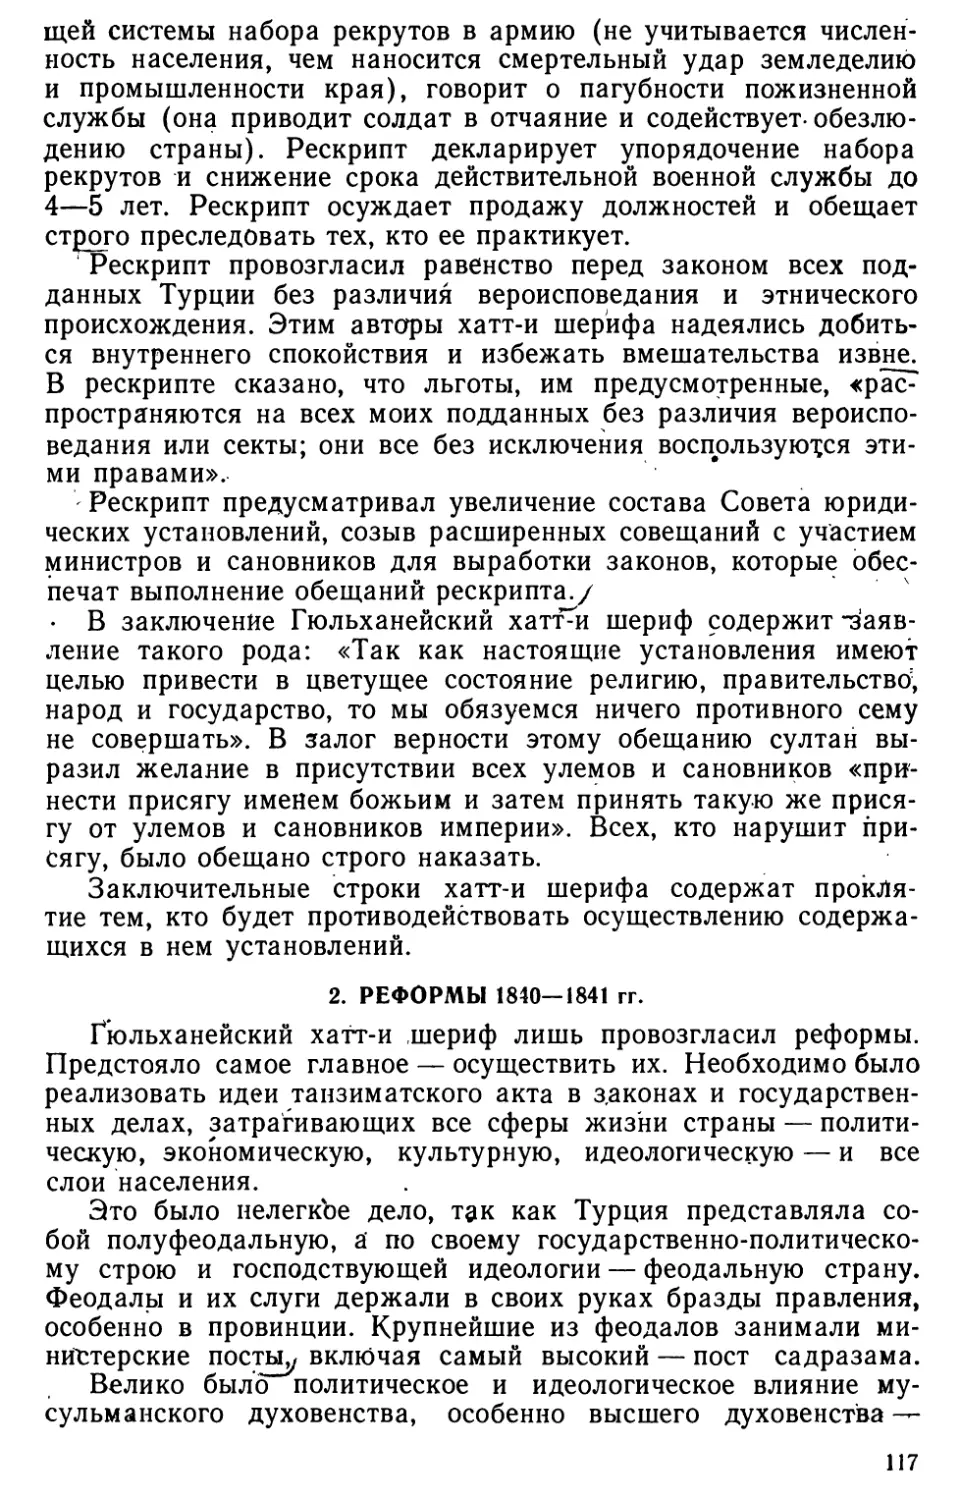 2. Реформы 1840—1841 гг.